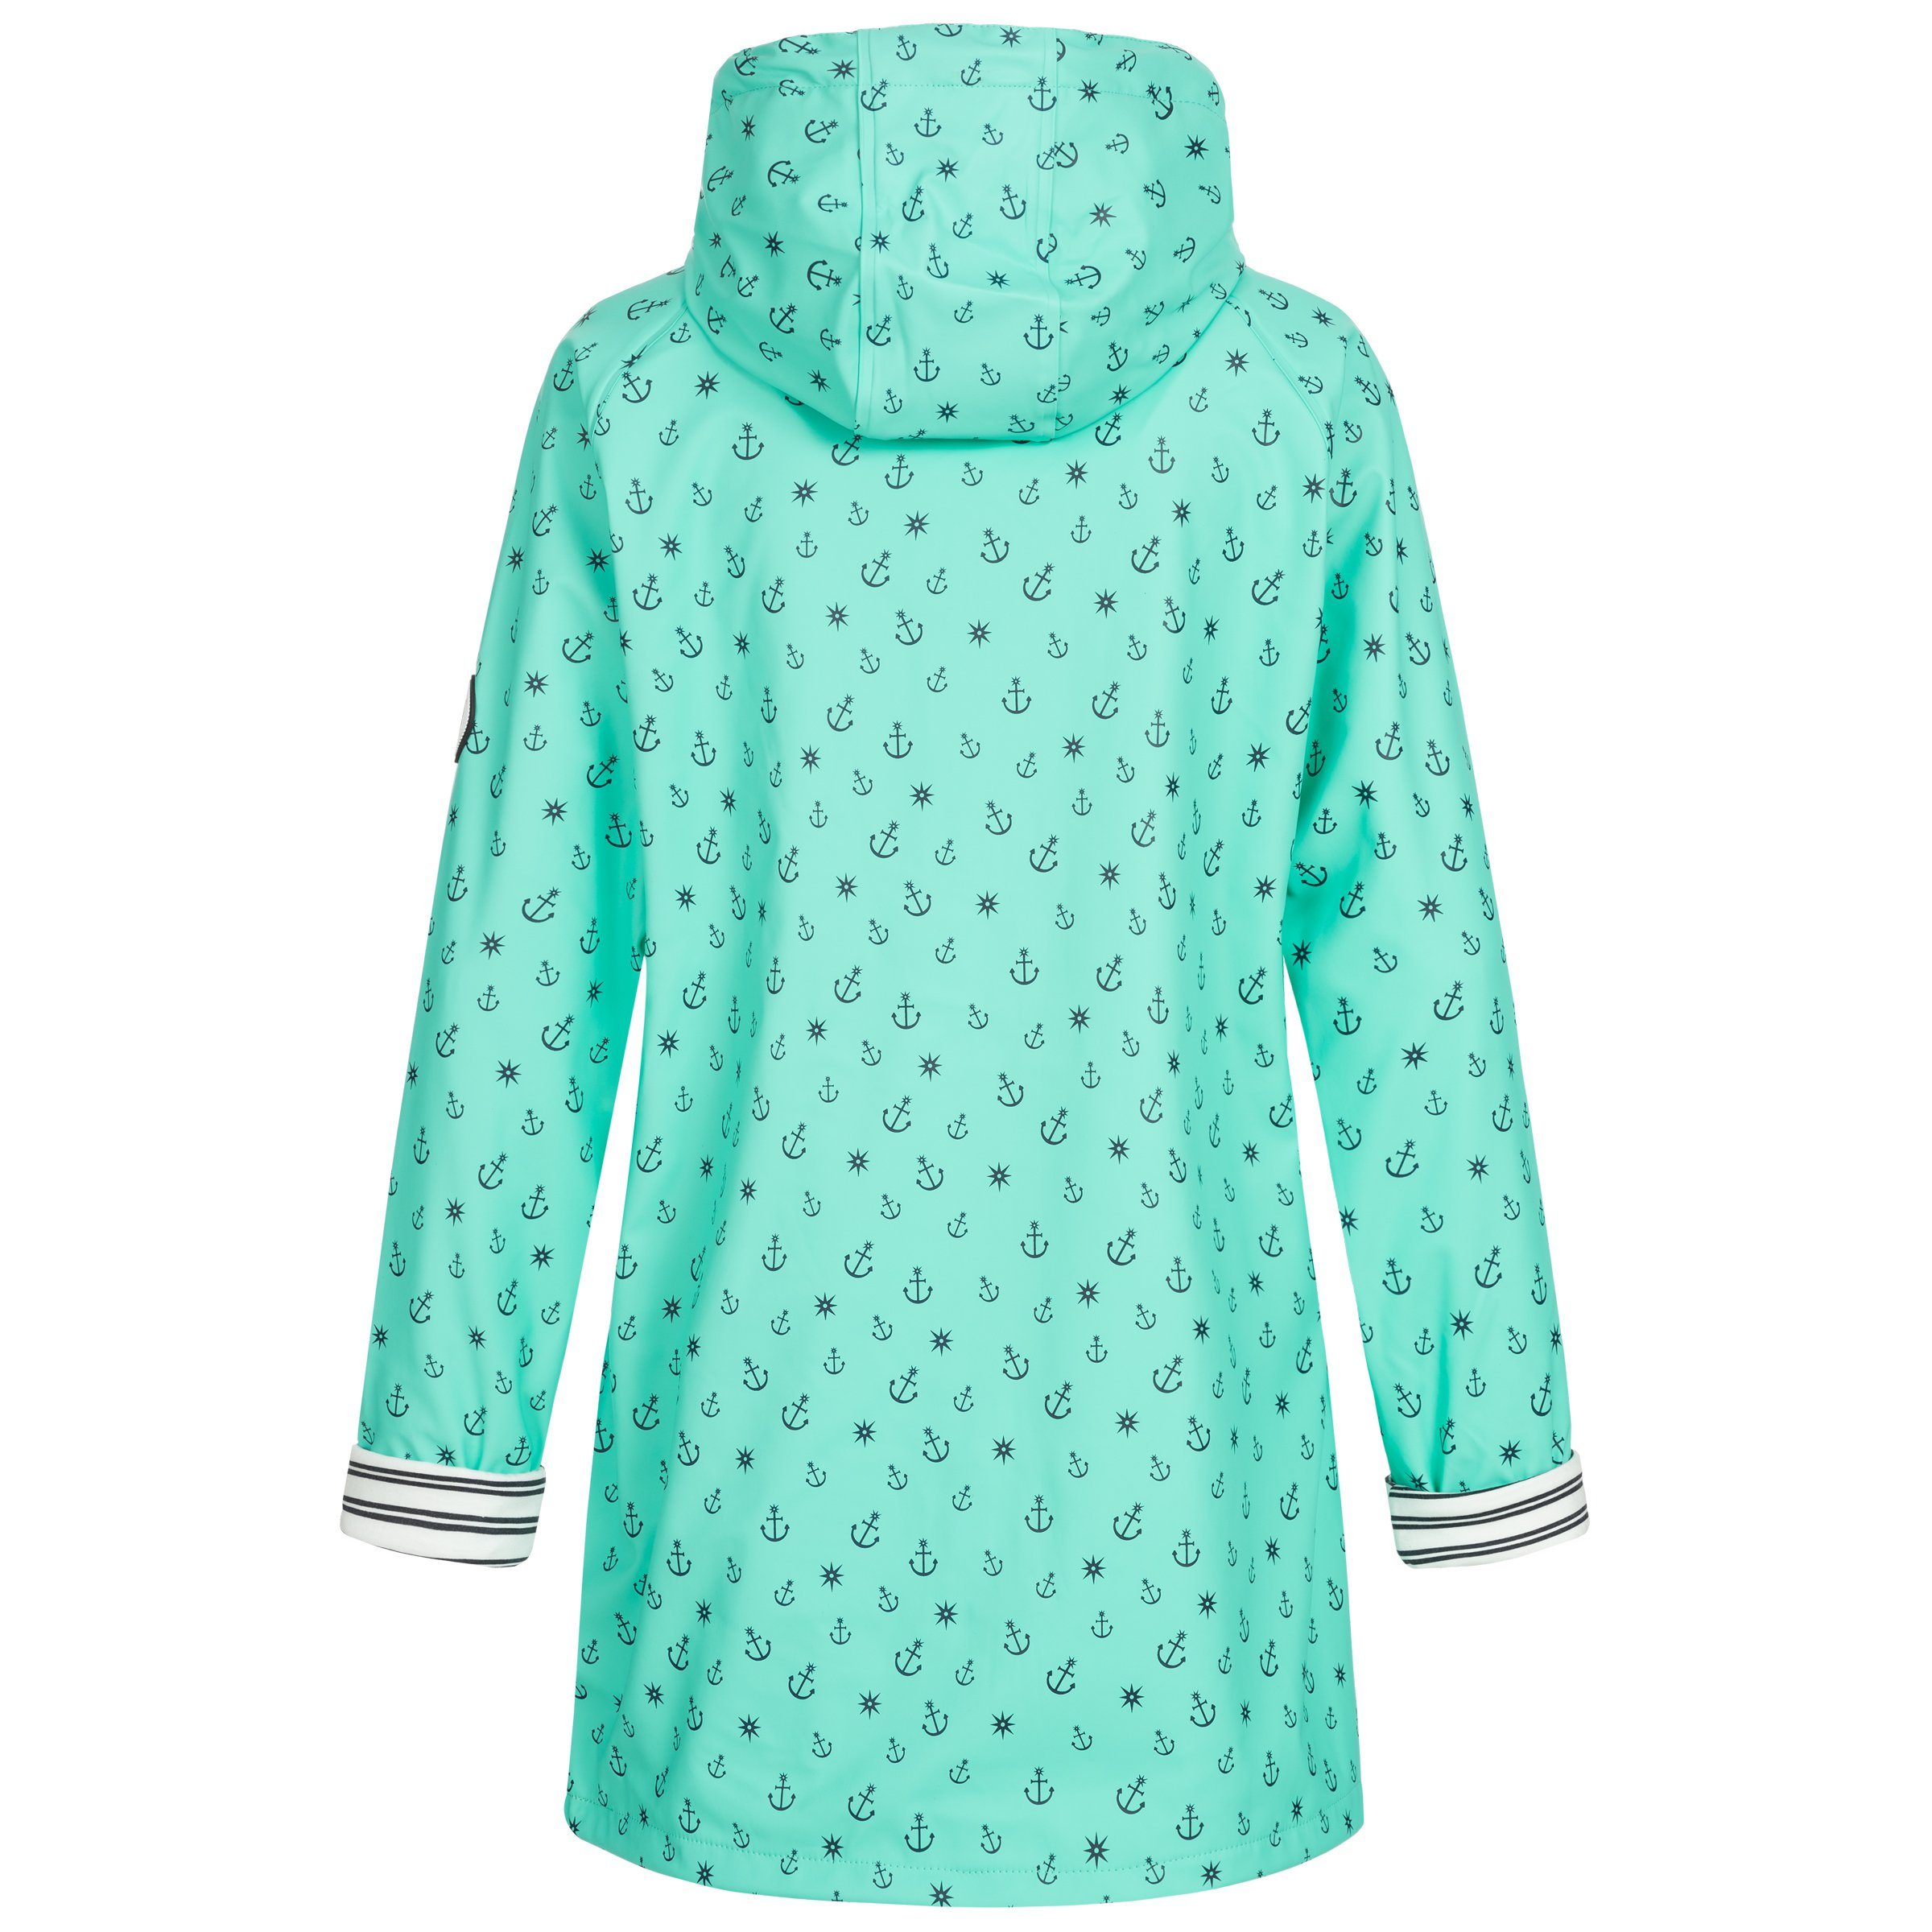 auch Regenjacke Größen CS WOMEN in erhältlich Großen turquoise Friesennerz #ankerglutzauber DEPROC Active